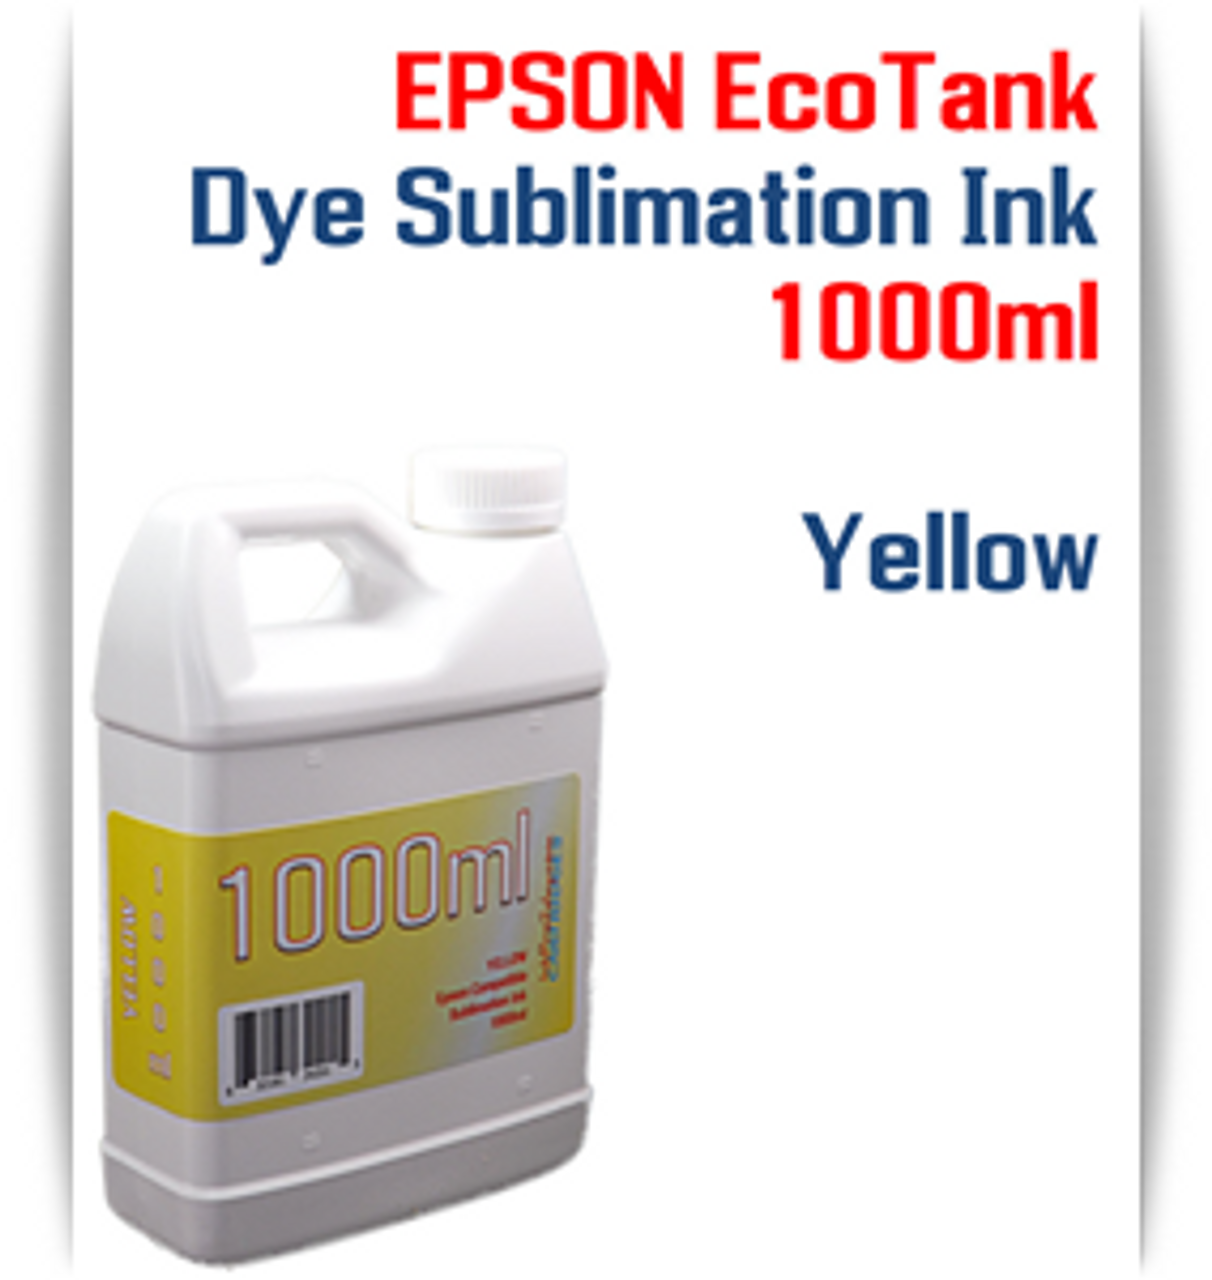 Yellow  EPSON EcoTank printer Dye Sublimation Ink 1000ml bottle

EPSON Expression ET-2500 EcoTank Printer, EPSON Expression ET-2550 EcoTank Printer, EPSON Expression ET-2600 EcoTank Printer, EPSON Expression ET-2650 EcoTank Printer, EPSON Expression ET-2700 EcoTank Printer, EPSON Expression ET-2750 EcoTank Printer, EPSON Expression ET-3600 EcoTank Printer, EPSON Expression ET-3700 EcoTank Printer

EPSON WorkForce ET-3750 EcoTank Printer, EPSON WorkForce ET-4500 EcoTank Printer, EPSON WorkForce ET-4550 EcoTank Printer, EPSON WorkForce ET-4750 EcoTank Printer, EPSON WorkForce ET-16500 EcoTank Printer